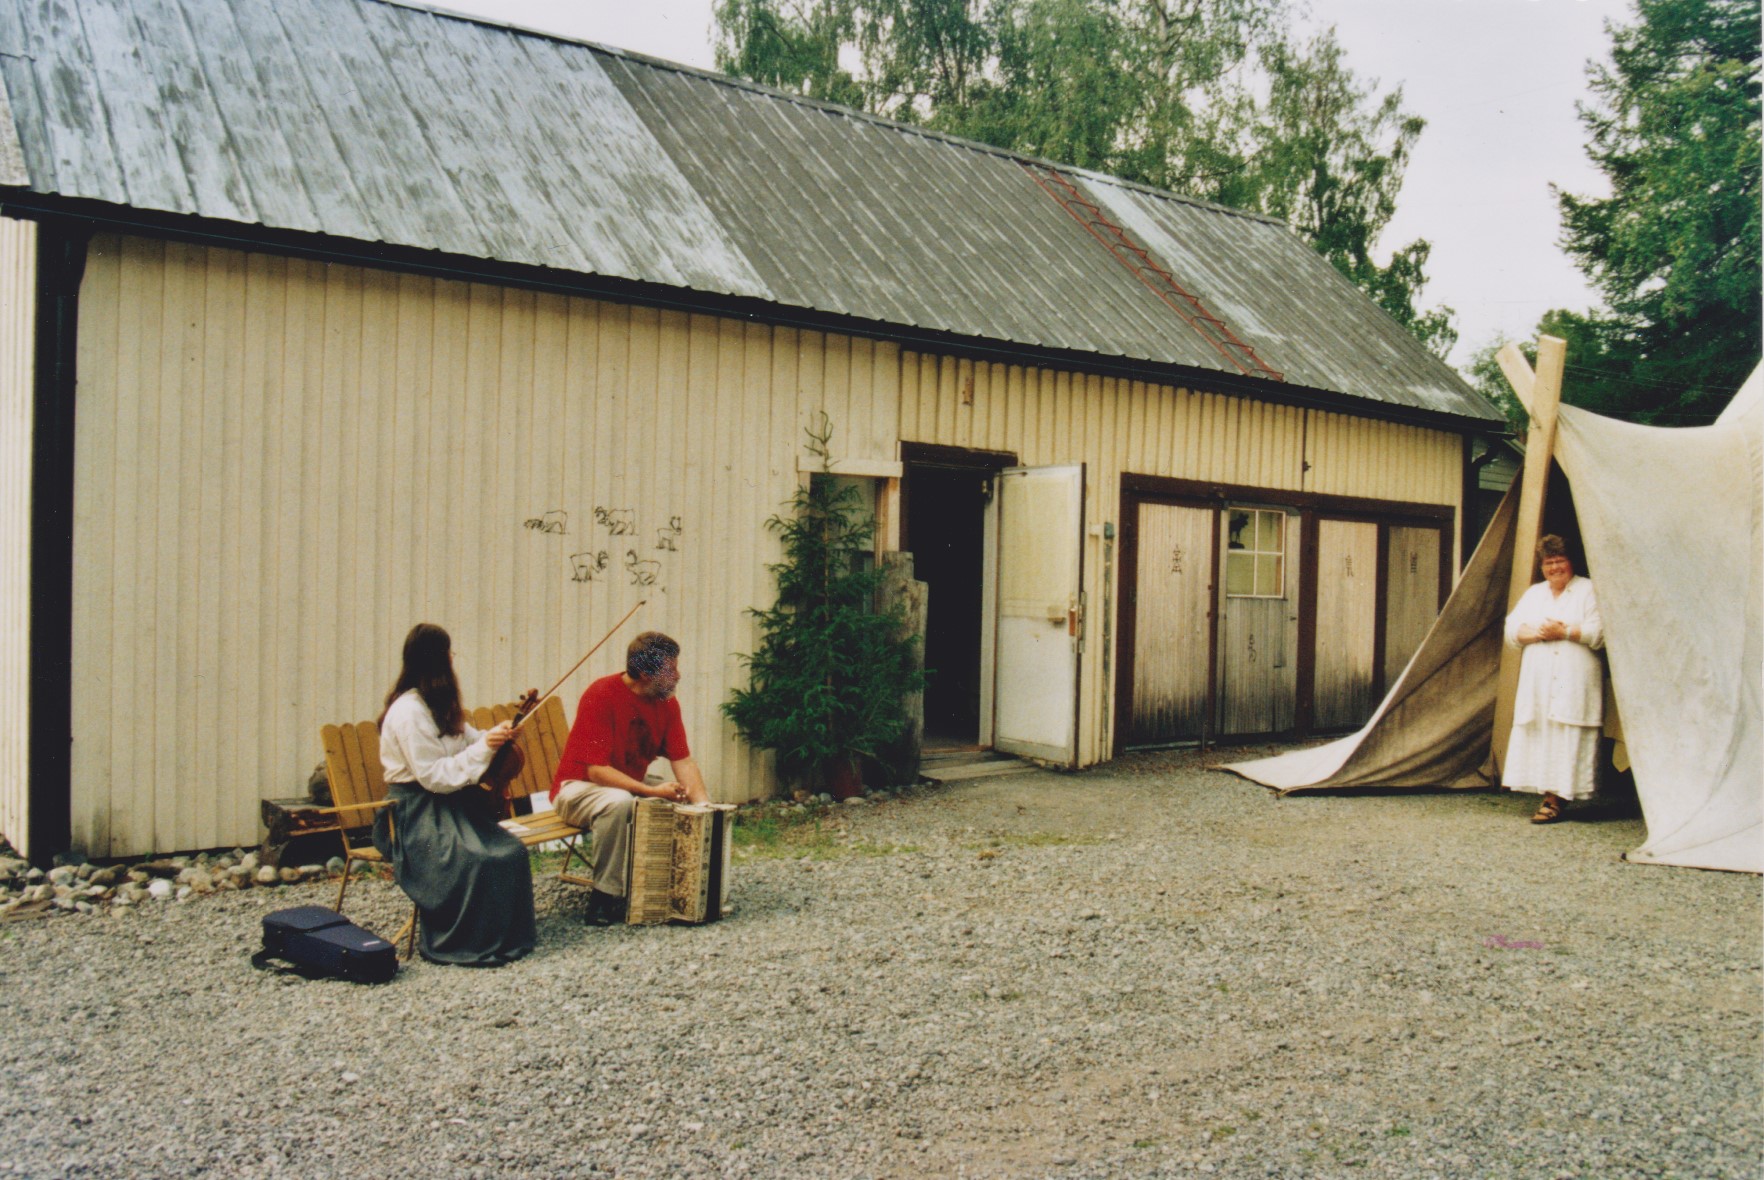 Hembygdsdagarna Konstutställning "Dyrkan" i gårdshuset och kaffeservering i kåtan på gården. Anette och Sune Löfström underhåller med folkmusik och Masrgit Fjällstedt bjuder in till kaffe i kåtan.